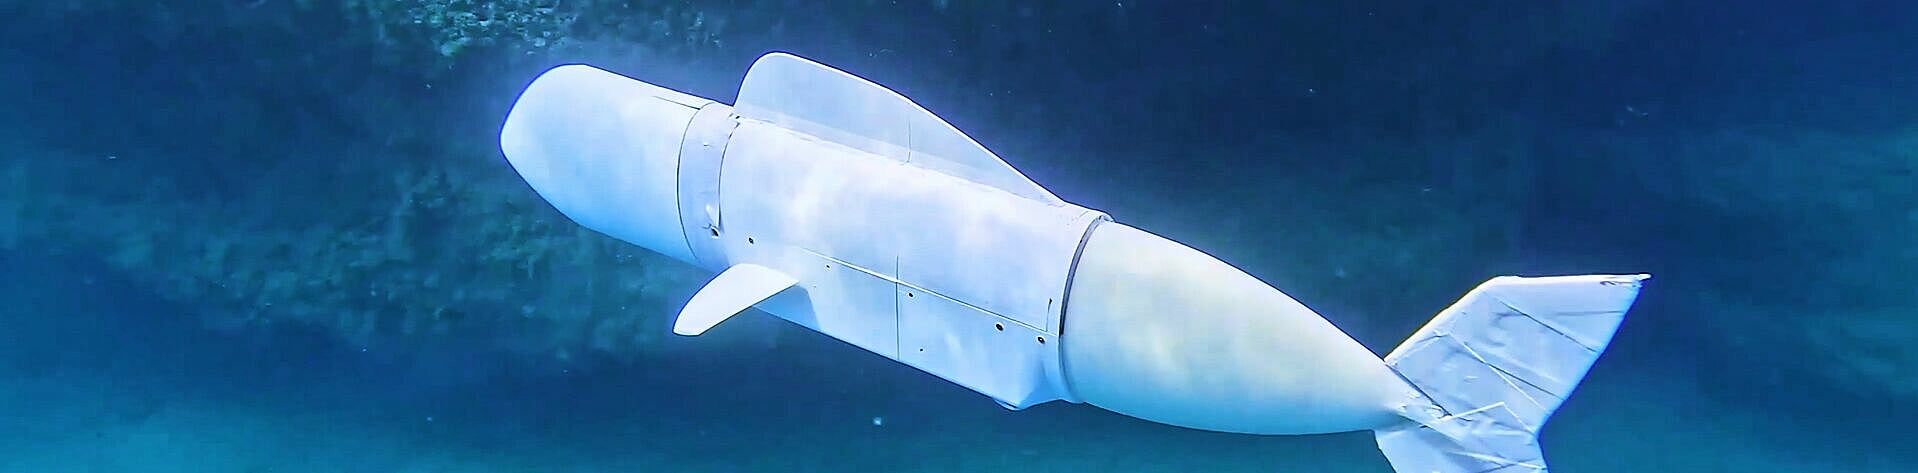 FAULHABER bürstenloser Motor für autonomen Roboter Fisch Unterwasseranwendung